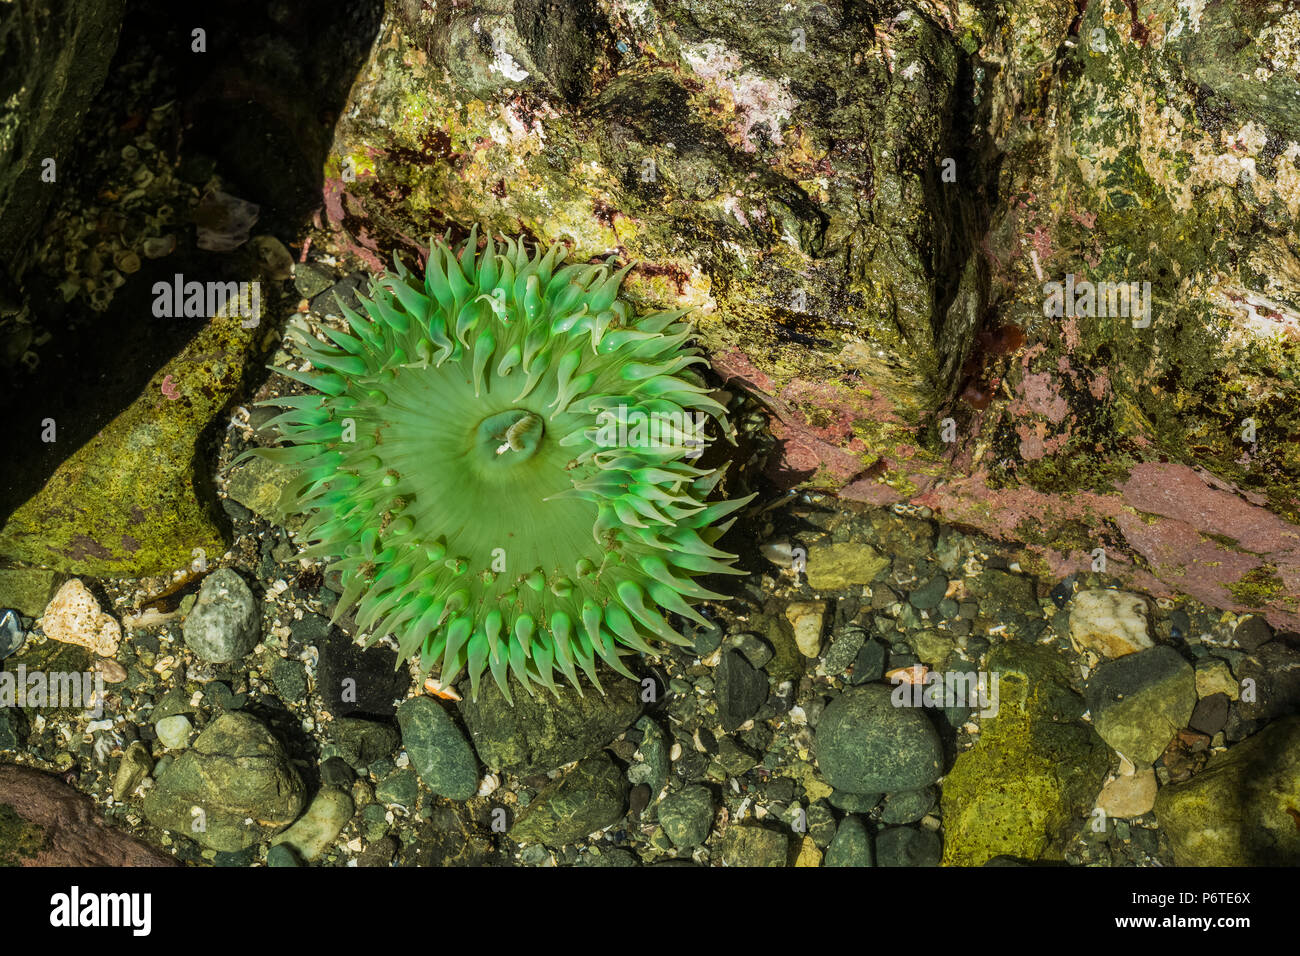 Verde gigante Anemone, Anthopleura xanthogrammica, in corrispondenza del punto di archi lungo l'Oceano Pacifico nel Parco Nazionale di Olympic, nello Stato di Washington, USA Foto Stock